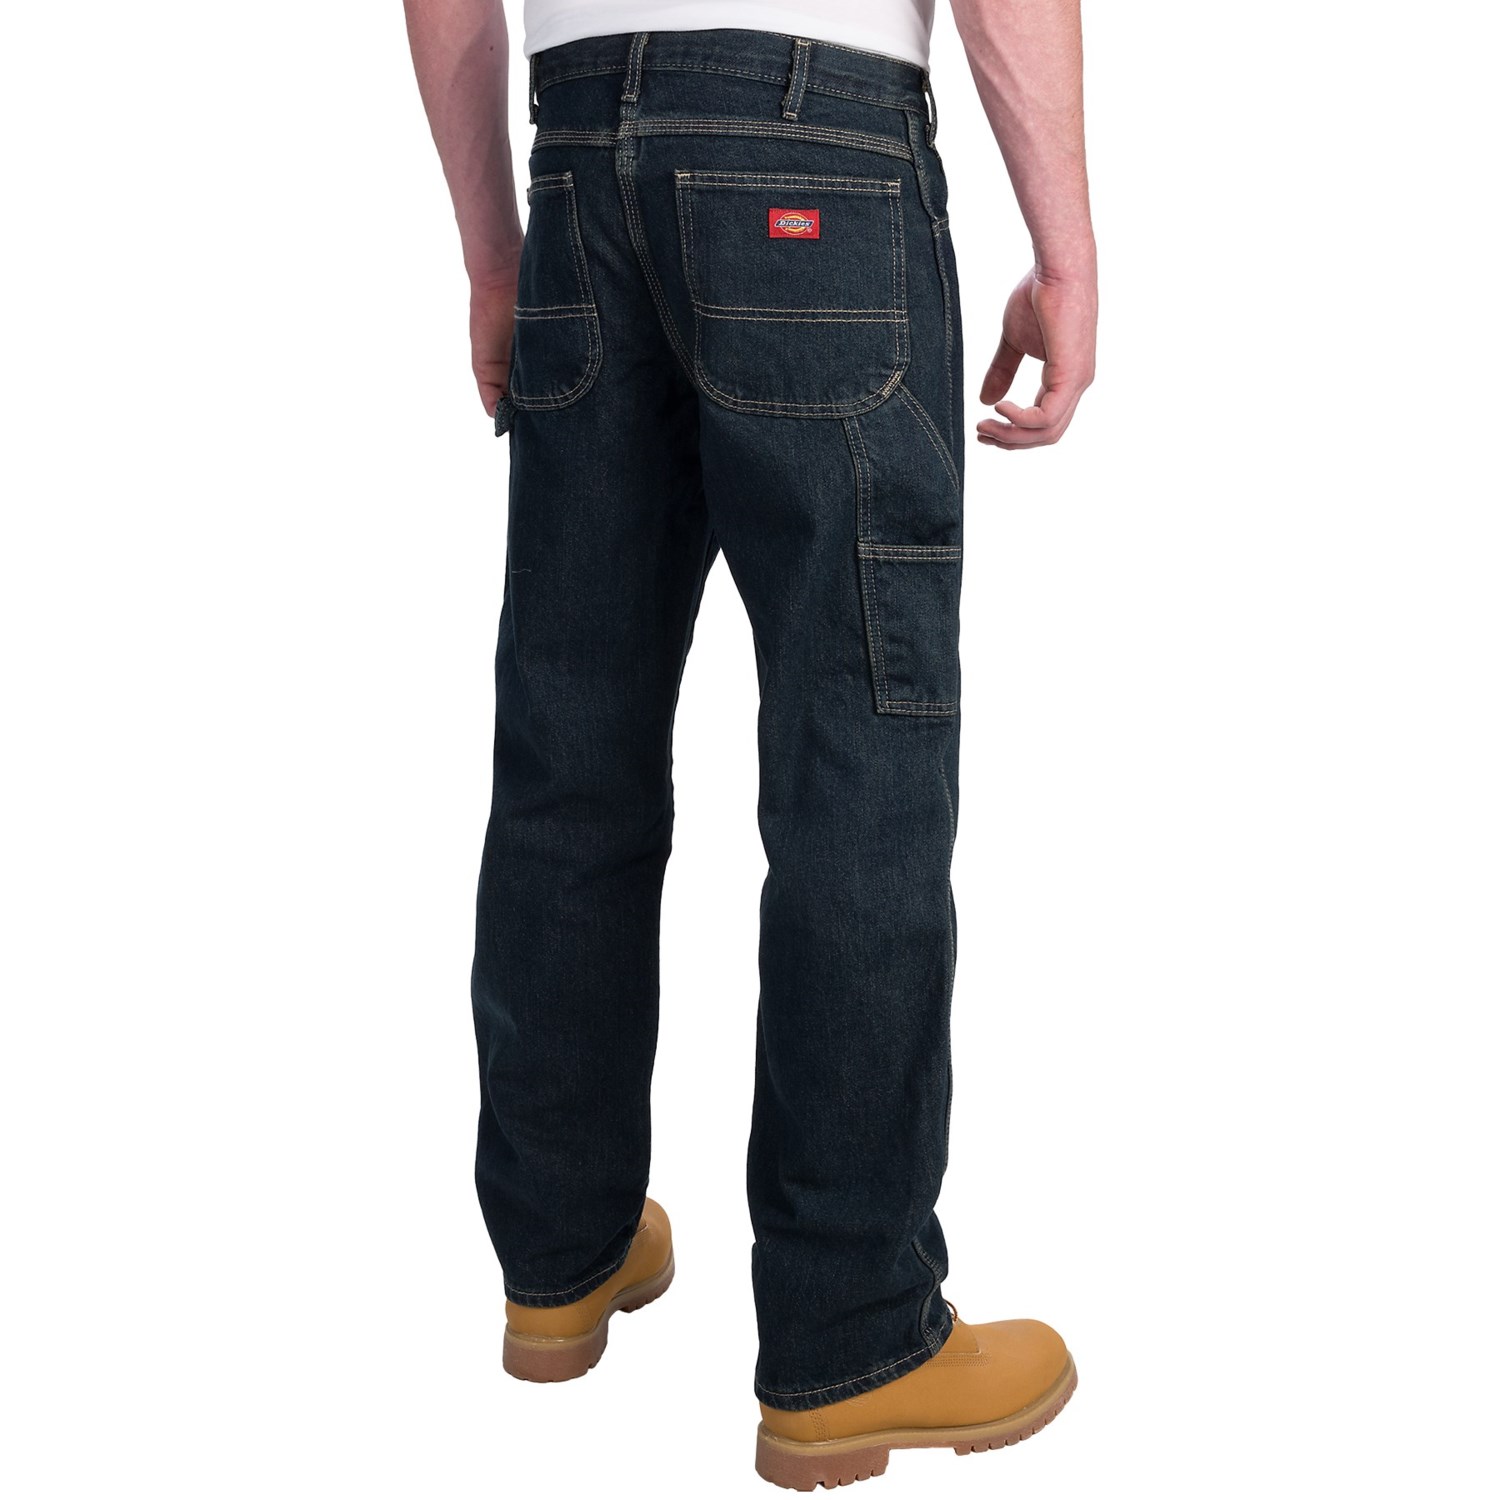 Dickies Carpenter Jeans (For Men) - Save 46%